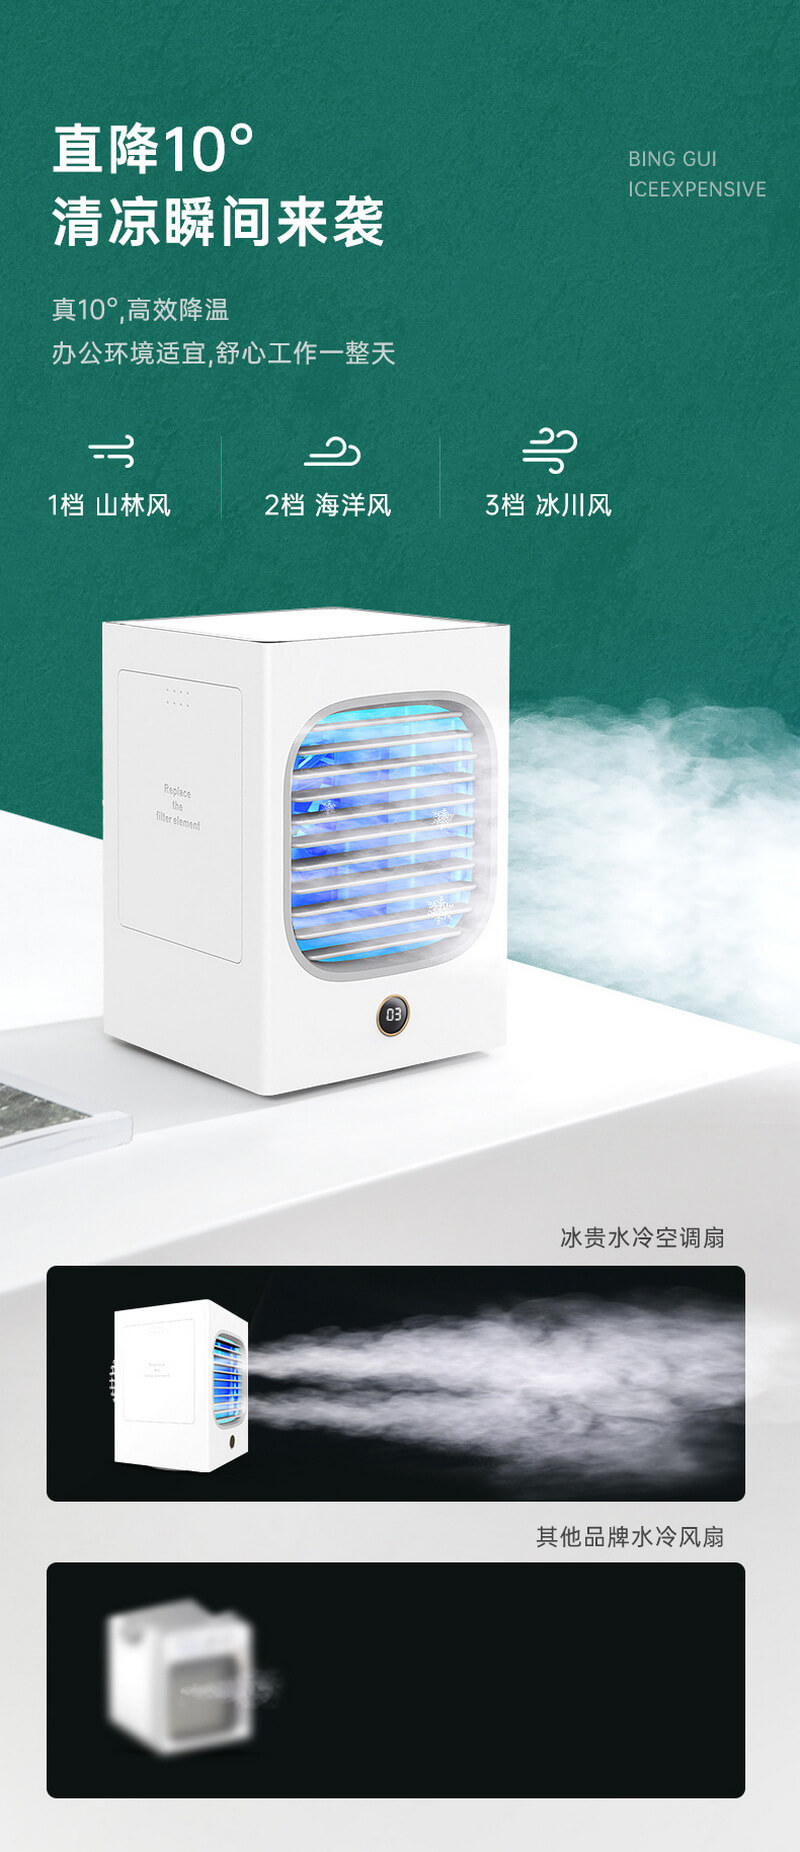 binggui novel water cooling fan usb desk mist spray fan table air cooler hydrocooling9